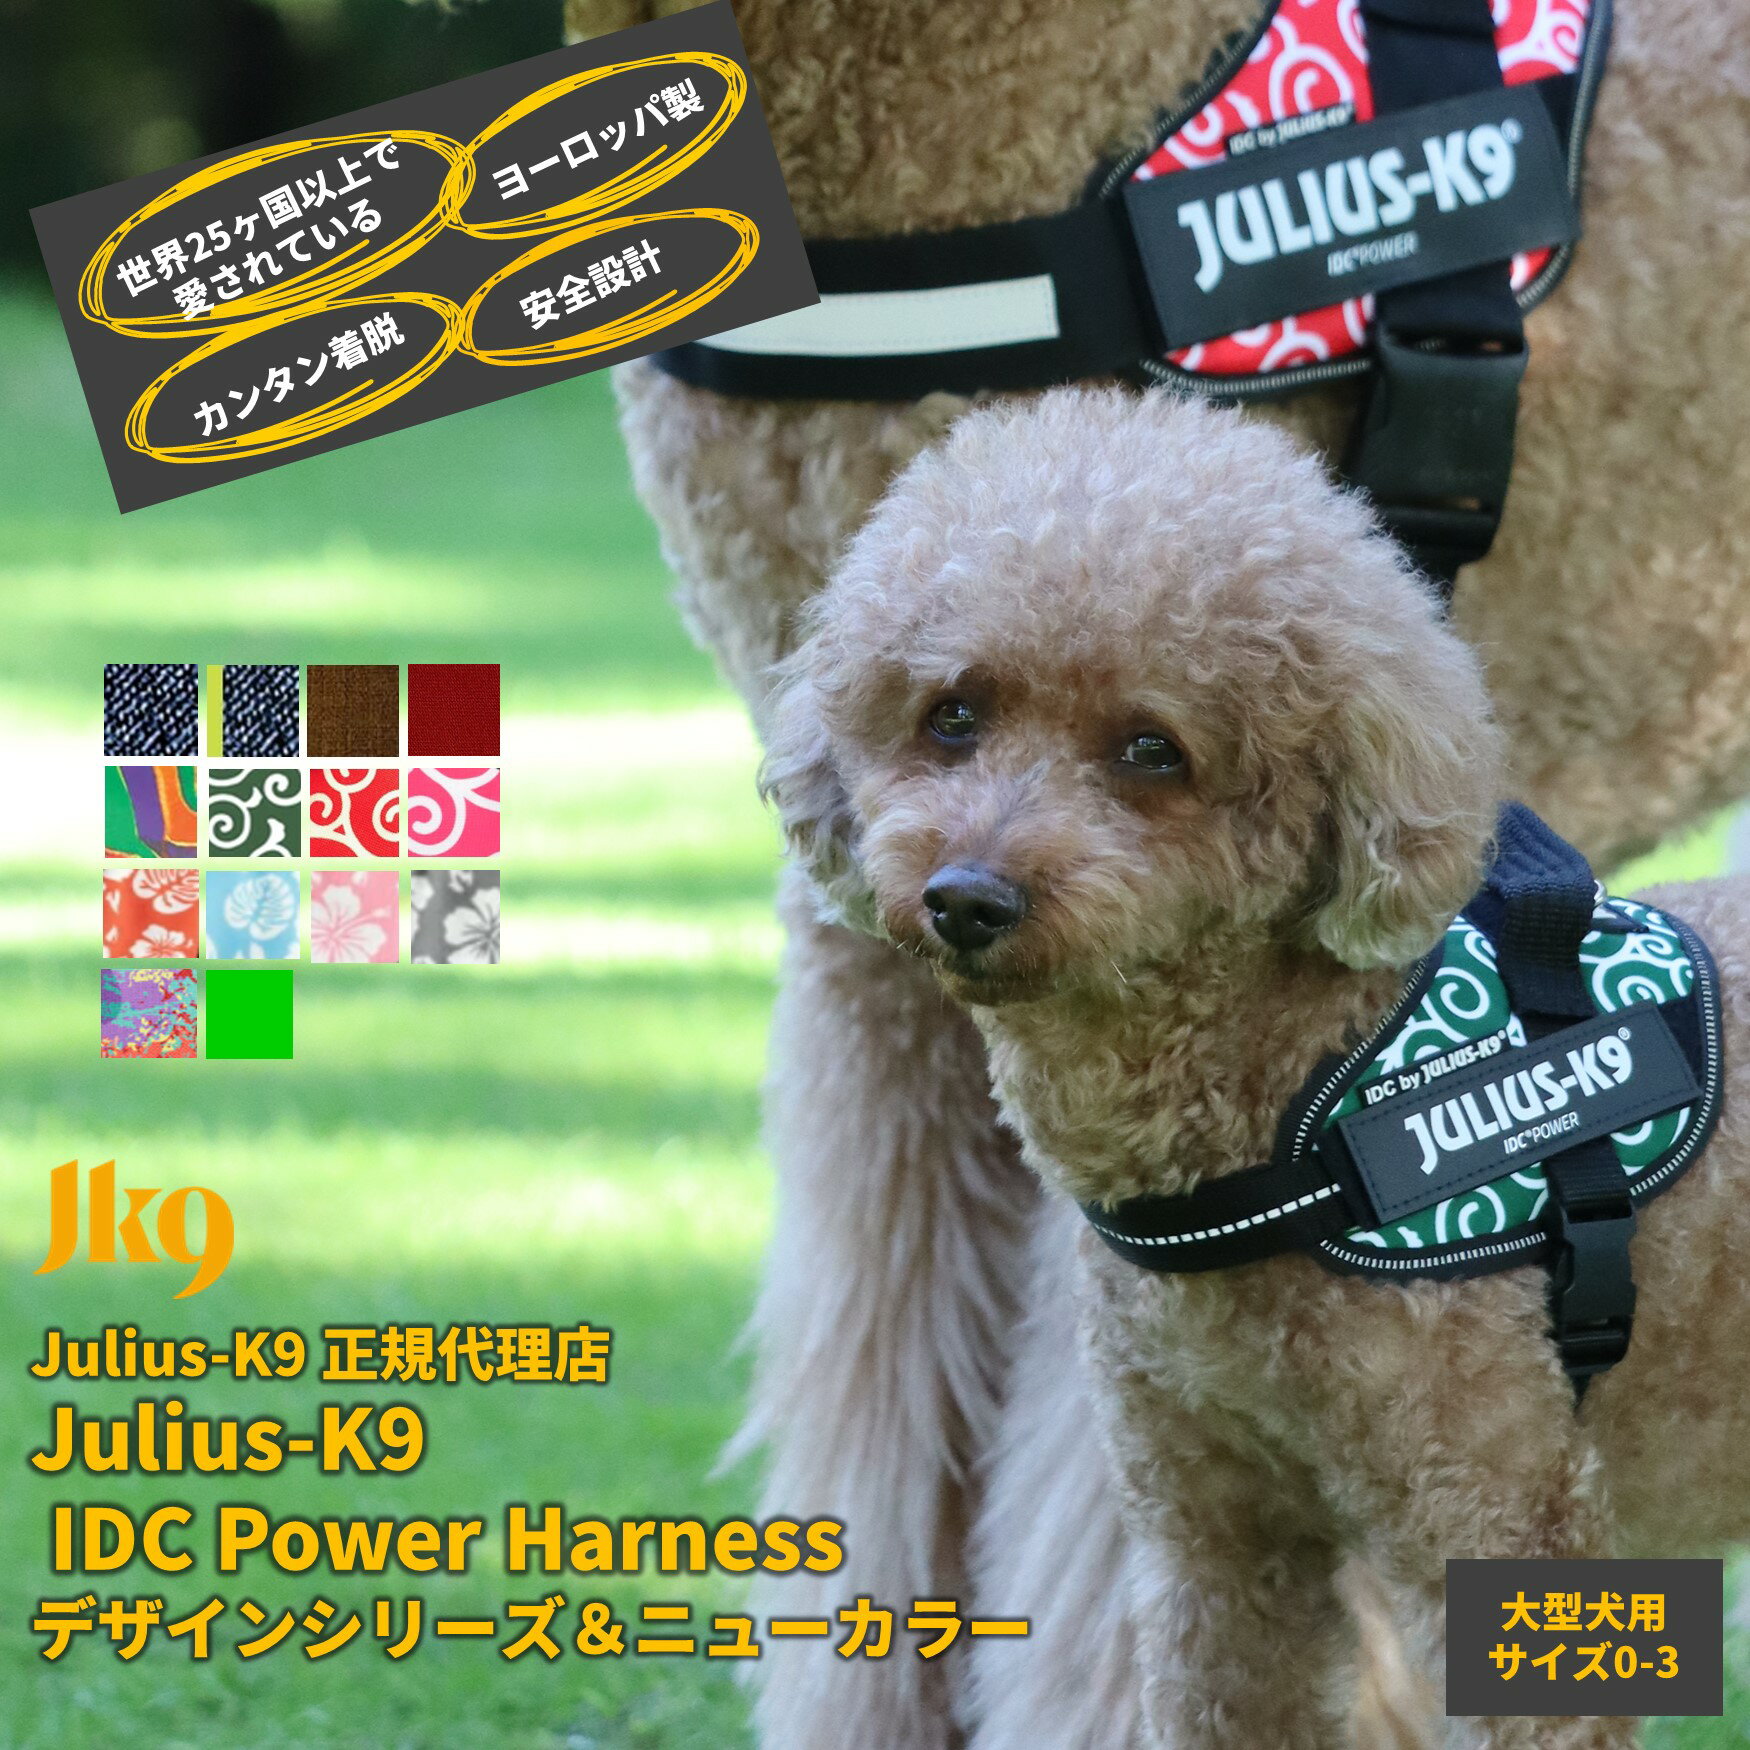 【送料無料】【Julius-K9】ユリウスケーナイン IDCパワーハーネス デザインシリーズ＆ニューカラー Size0〜3サイズ 中 大型犬用サイズ